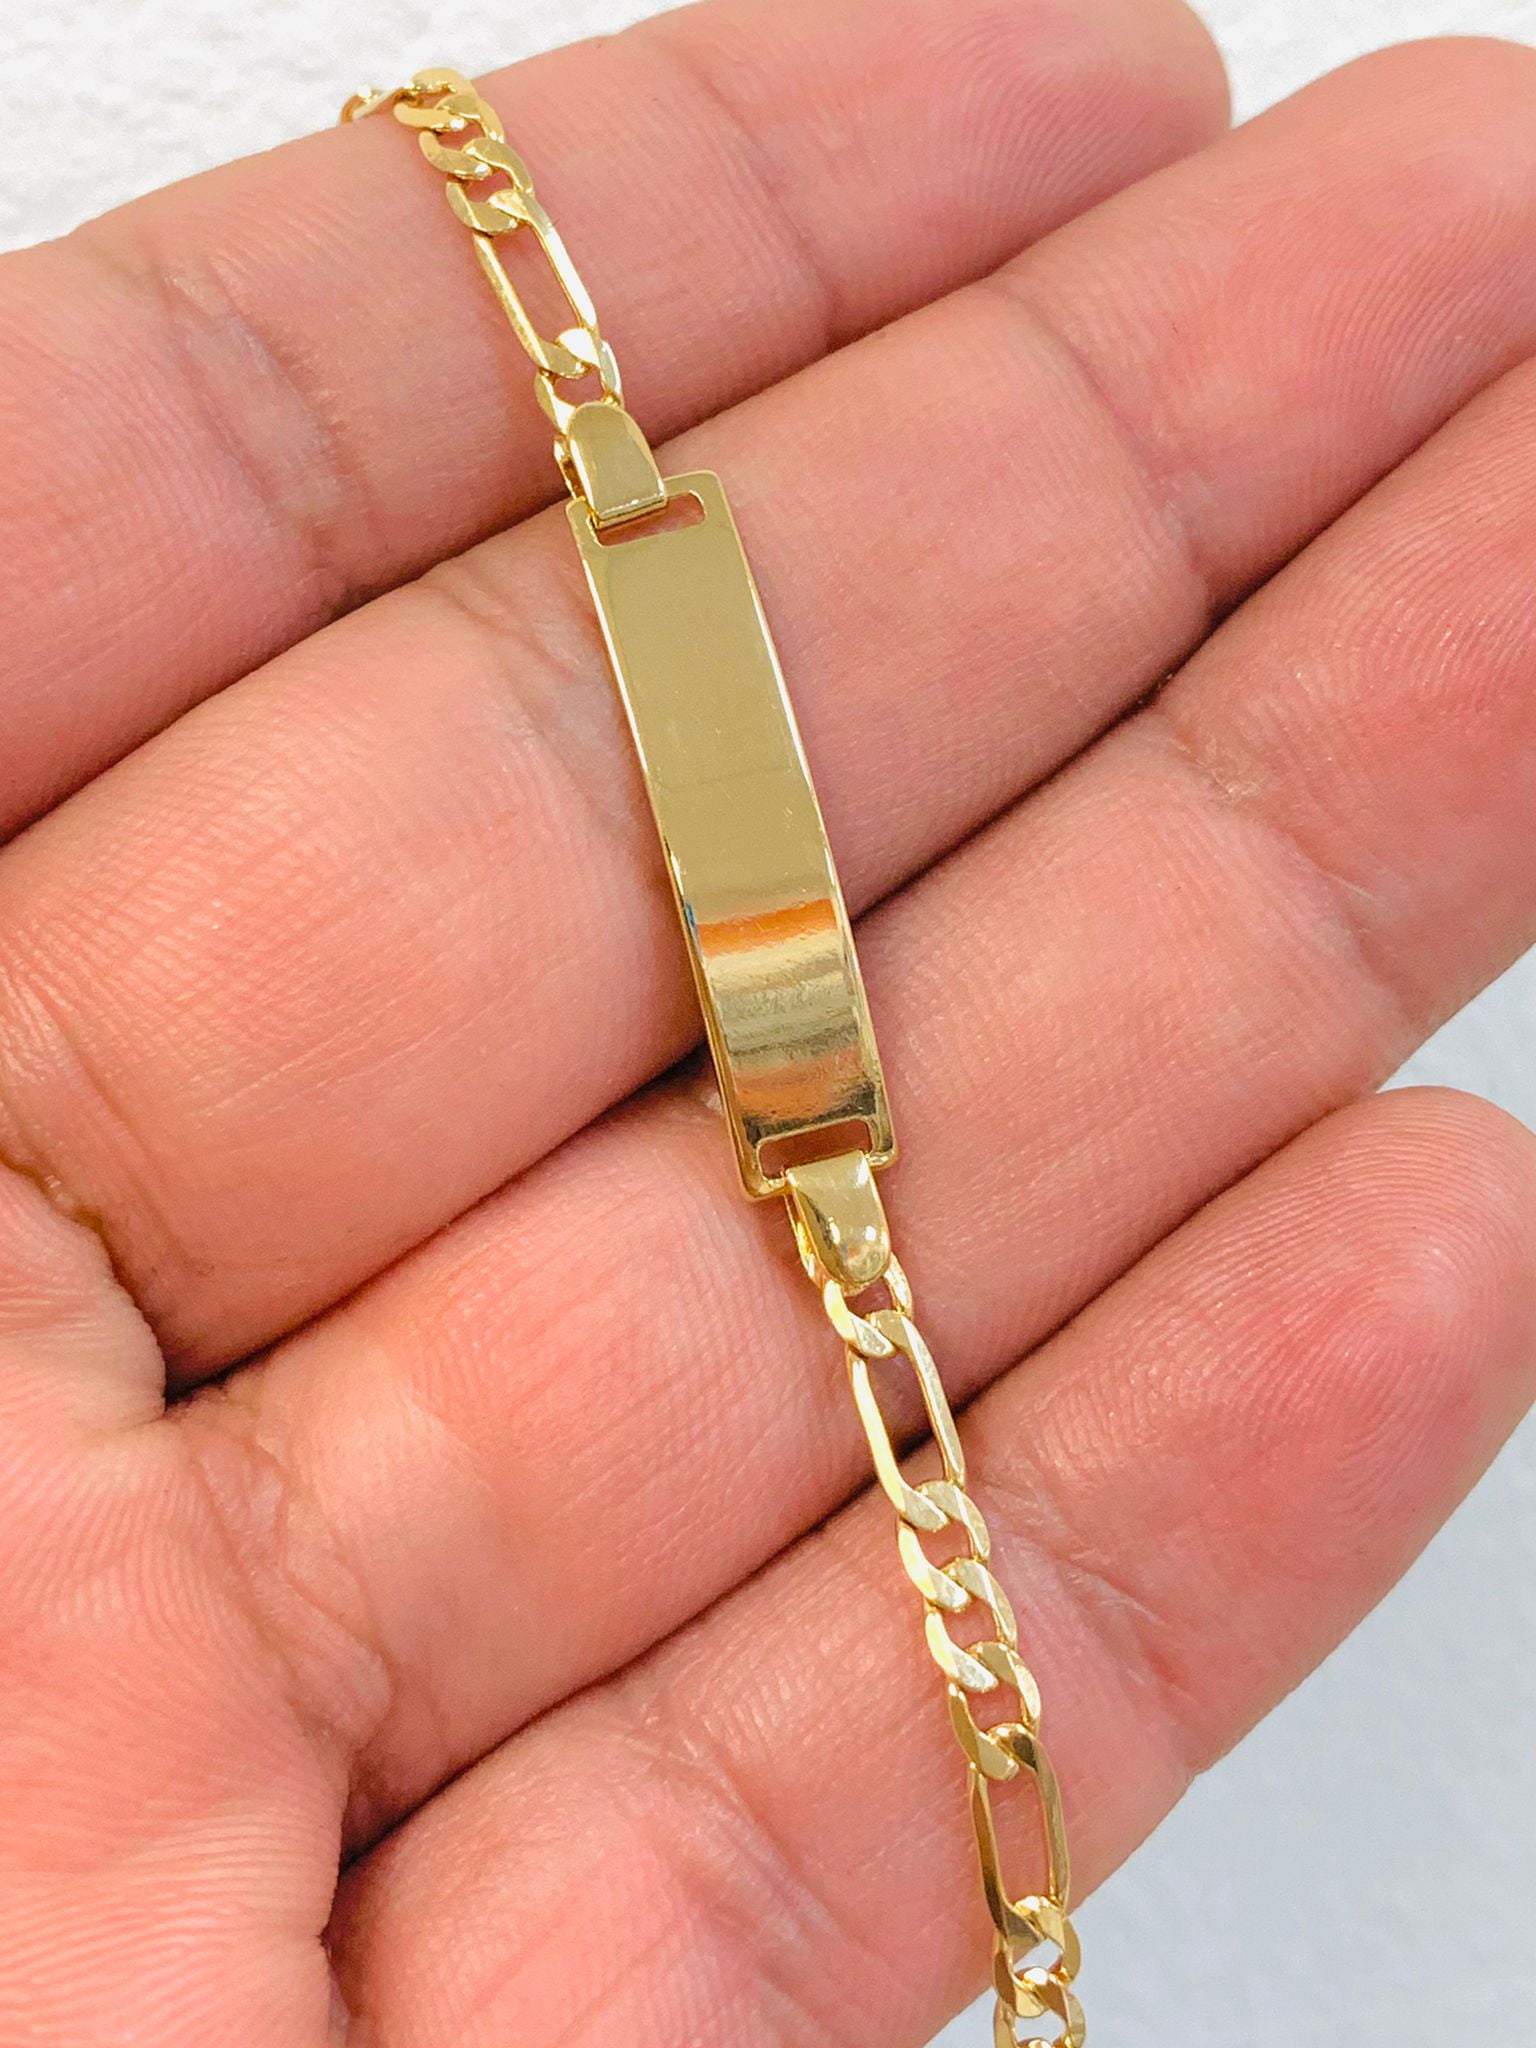 Details about   18k Gold Filled Figaro Link Childrens ID Bracelet Engraving,Pulsera Esclava Bebe 